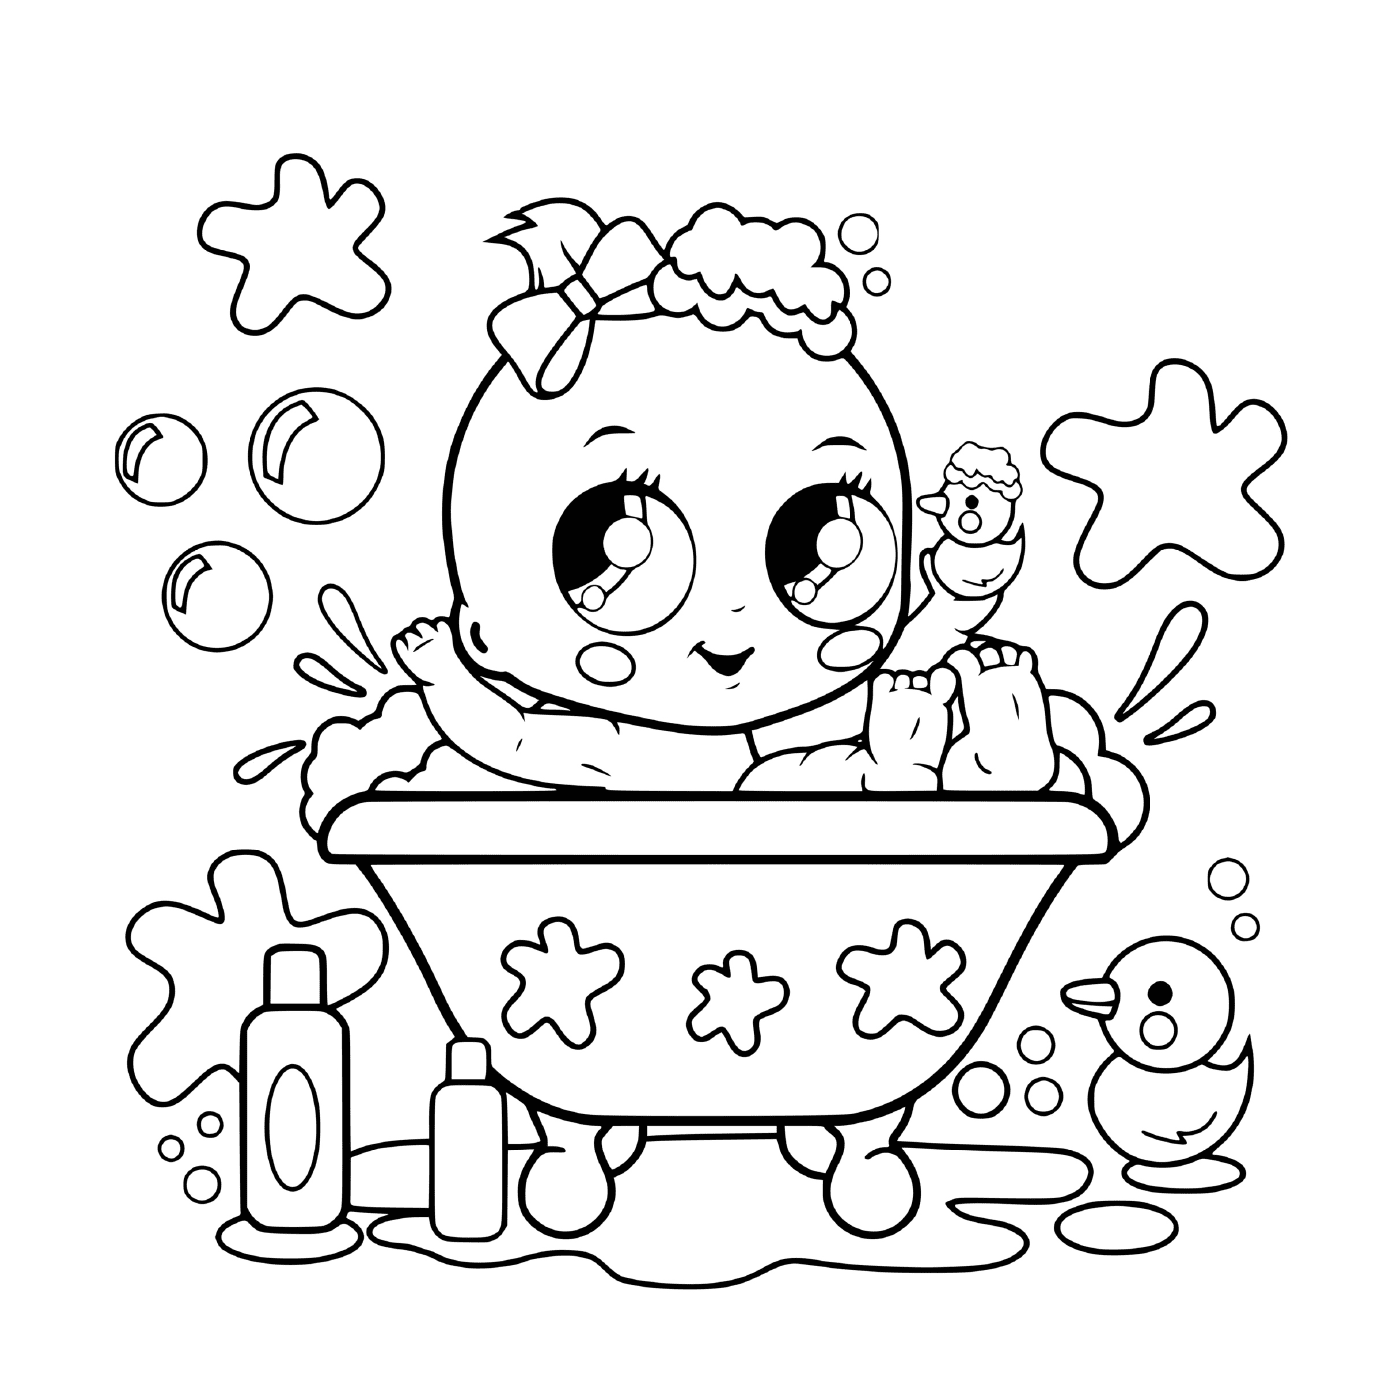  Um bebê em uma banheira 